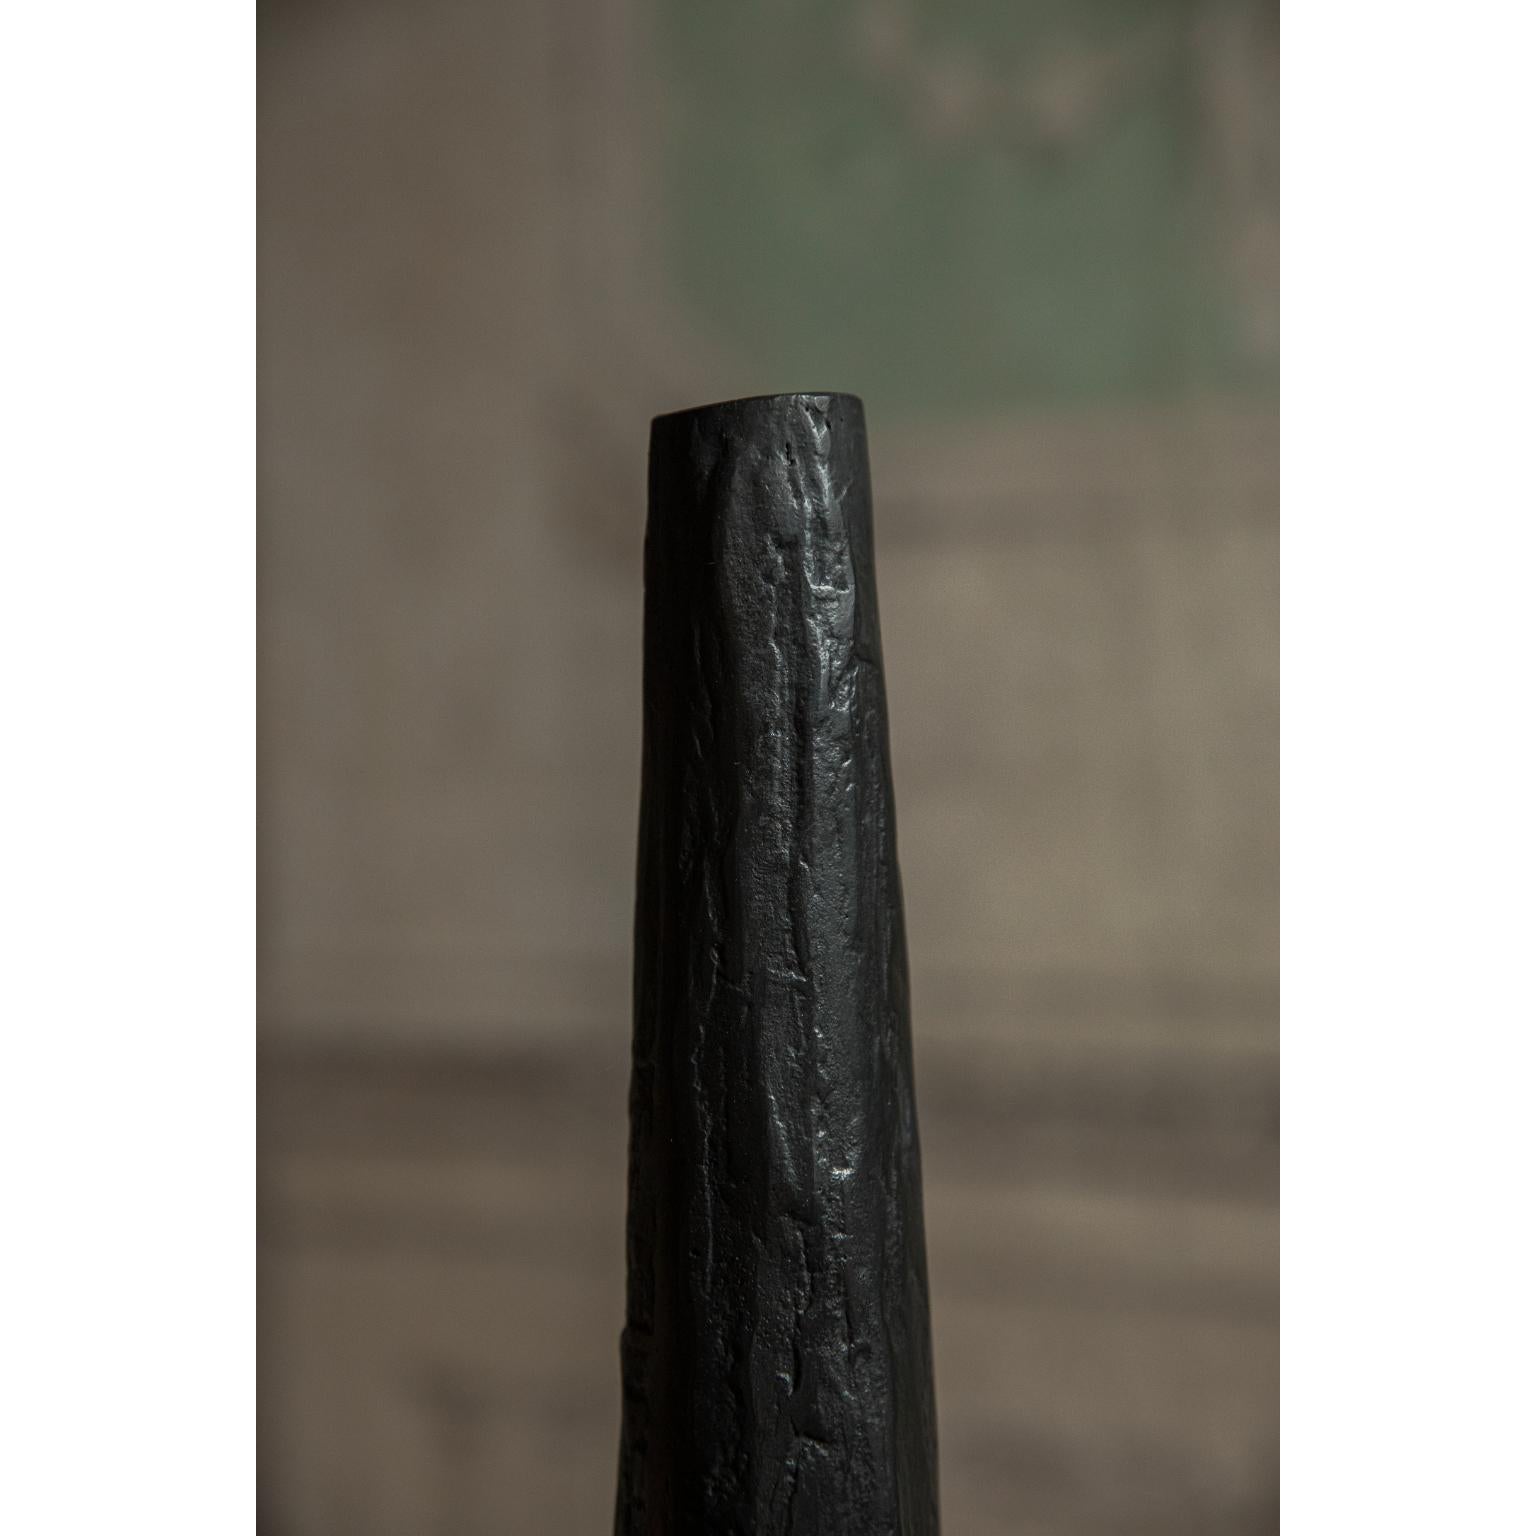 Große bronzene Kerzenständer von Rick Owens
2015
Abmessungen: L 7,5 x B 7,5 x H 35 cm
MATERIALIEN: Bronze
Gewicht: 2.8 kg

Rick Owens ist ein in Kalifornien geborener Mode- und Einrichtungsexperte, der einen einzigartigen Stil entwickelt hat, den er